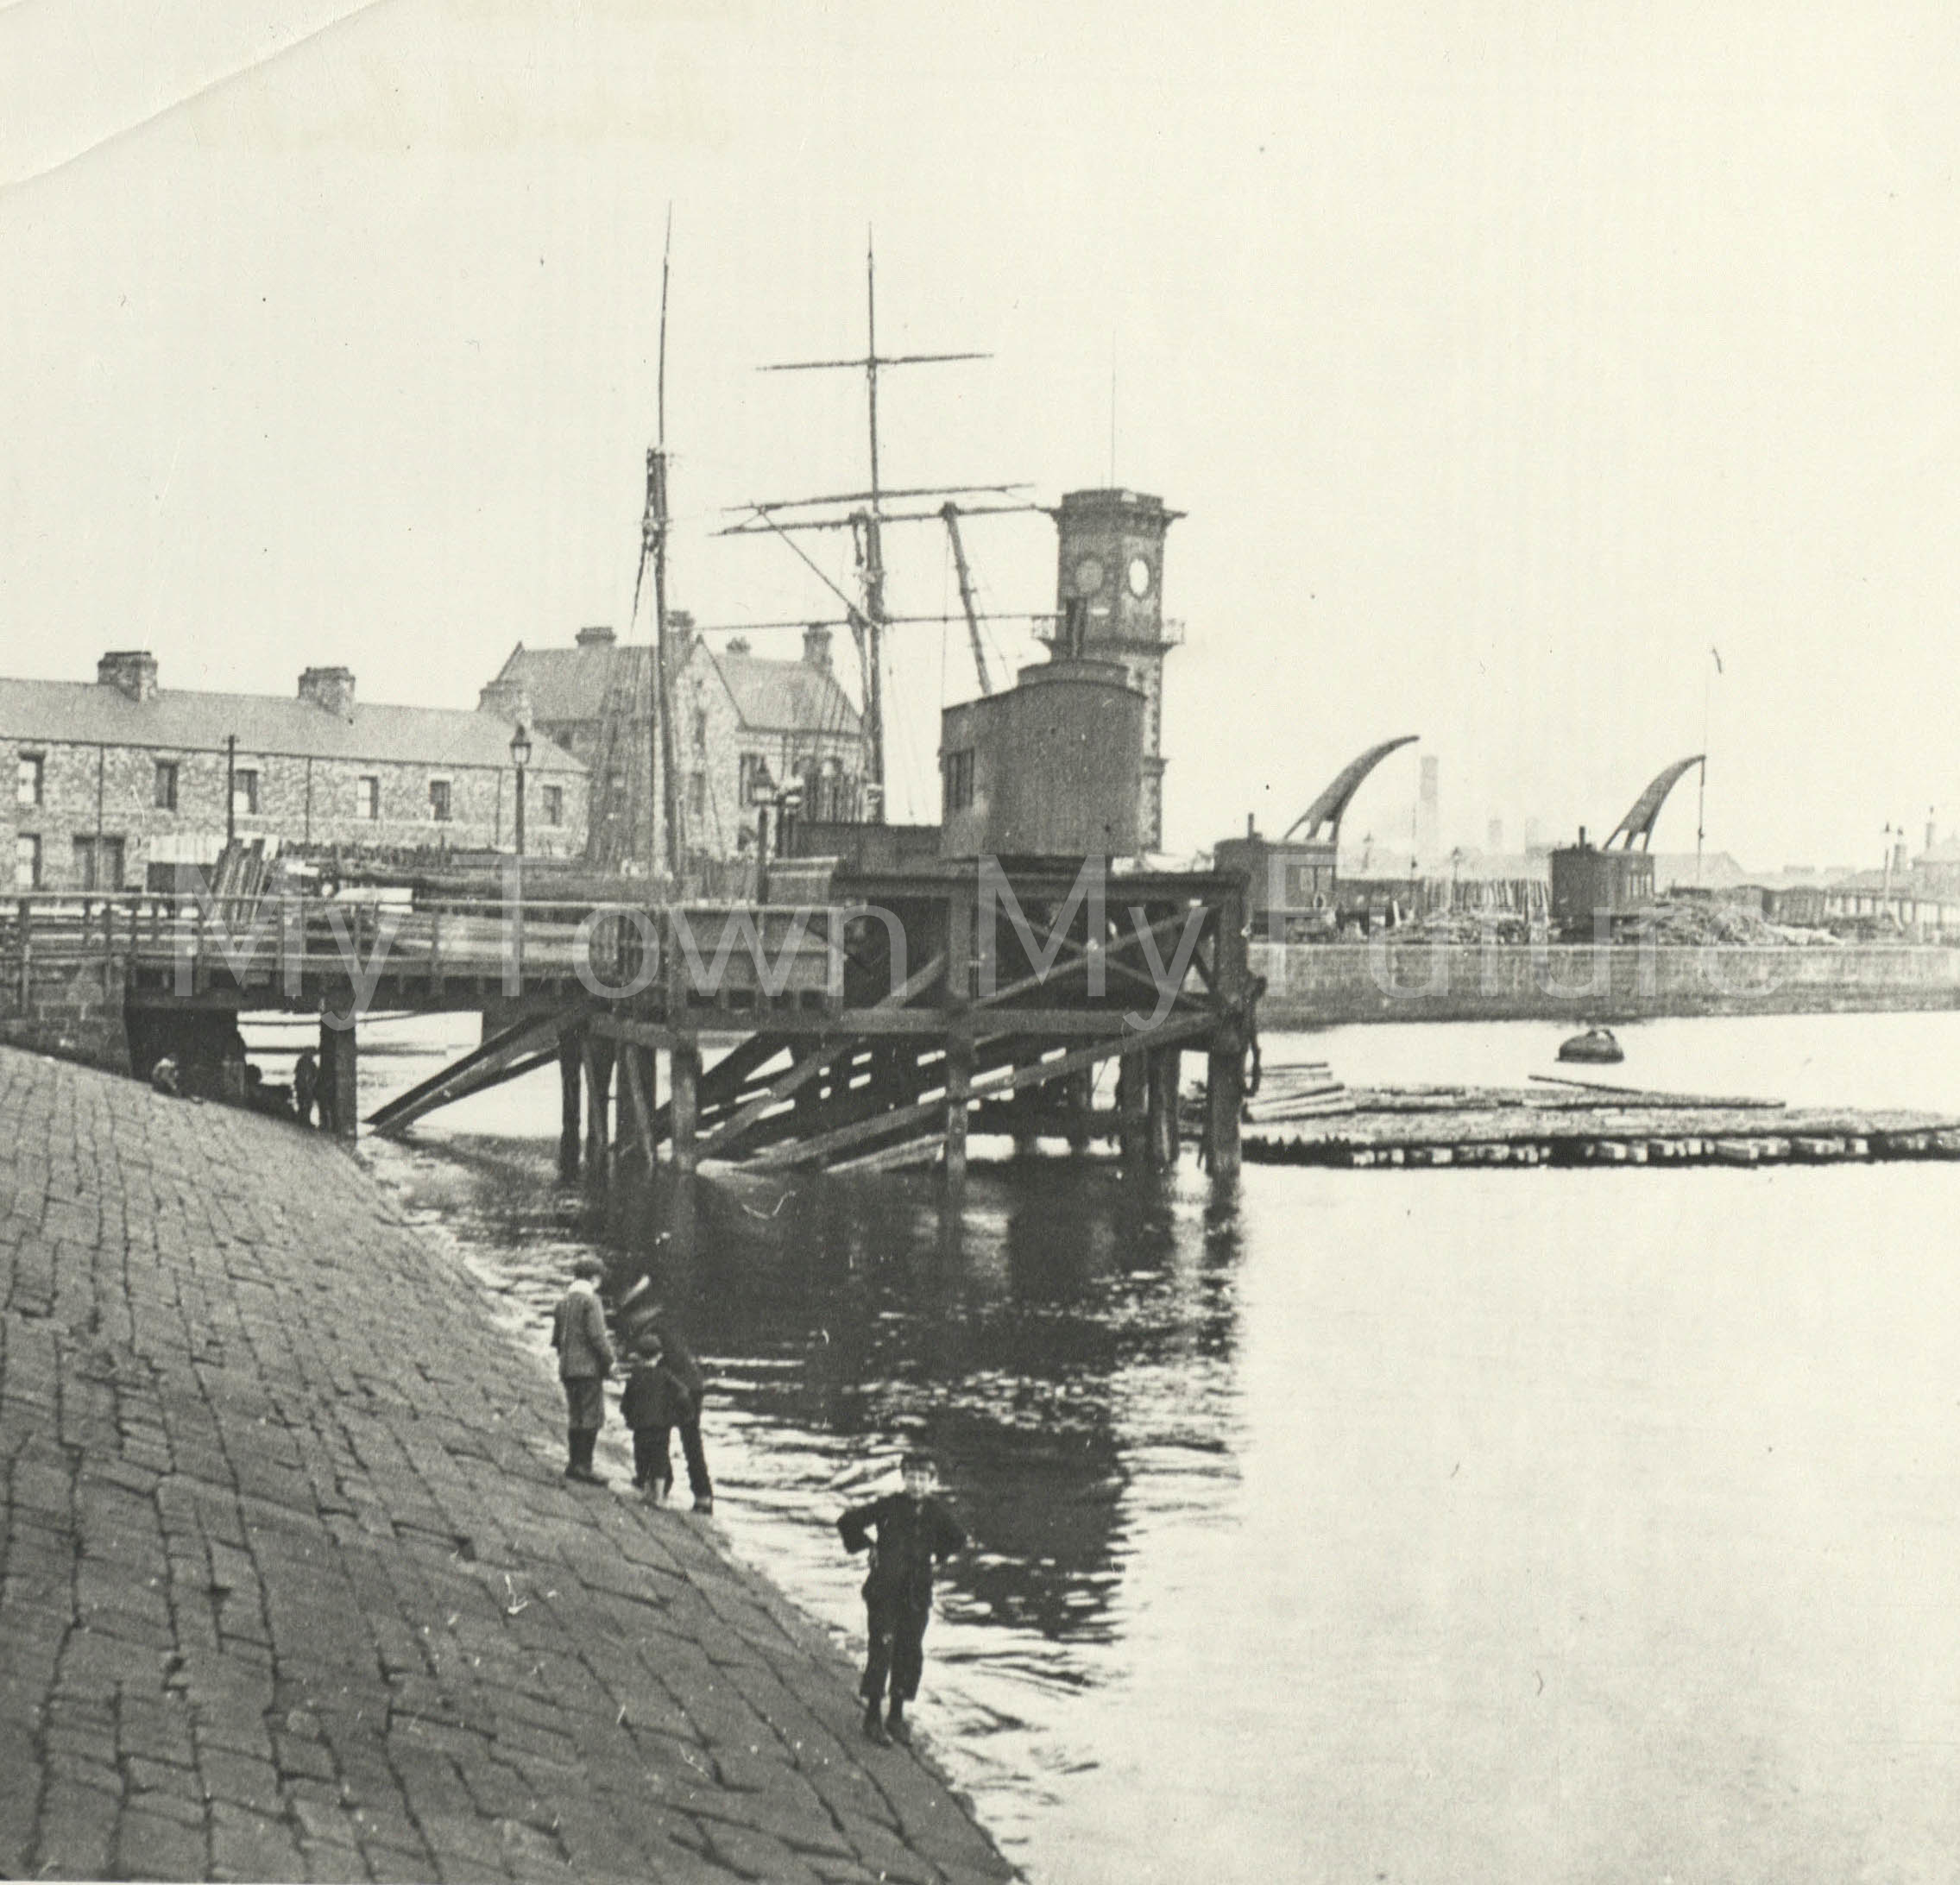 Middlesbrough Docks